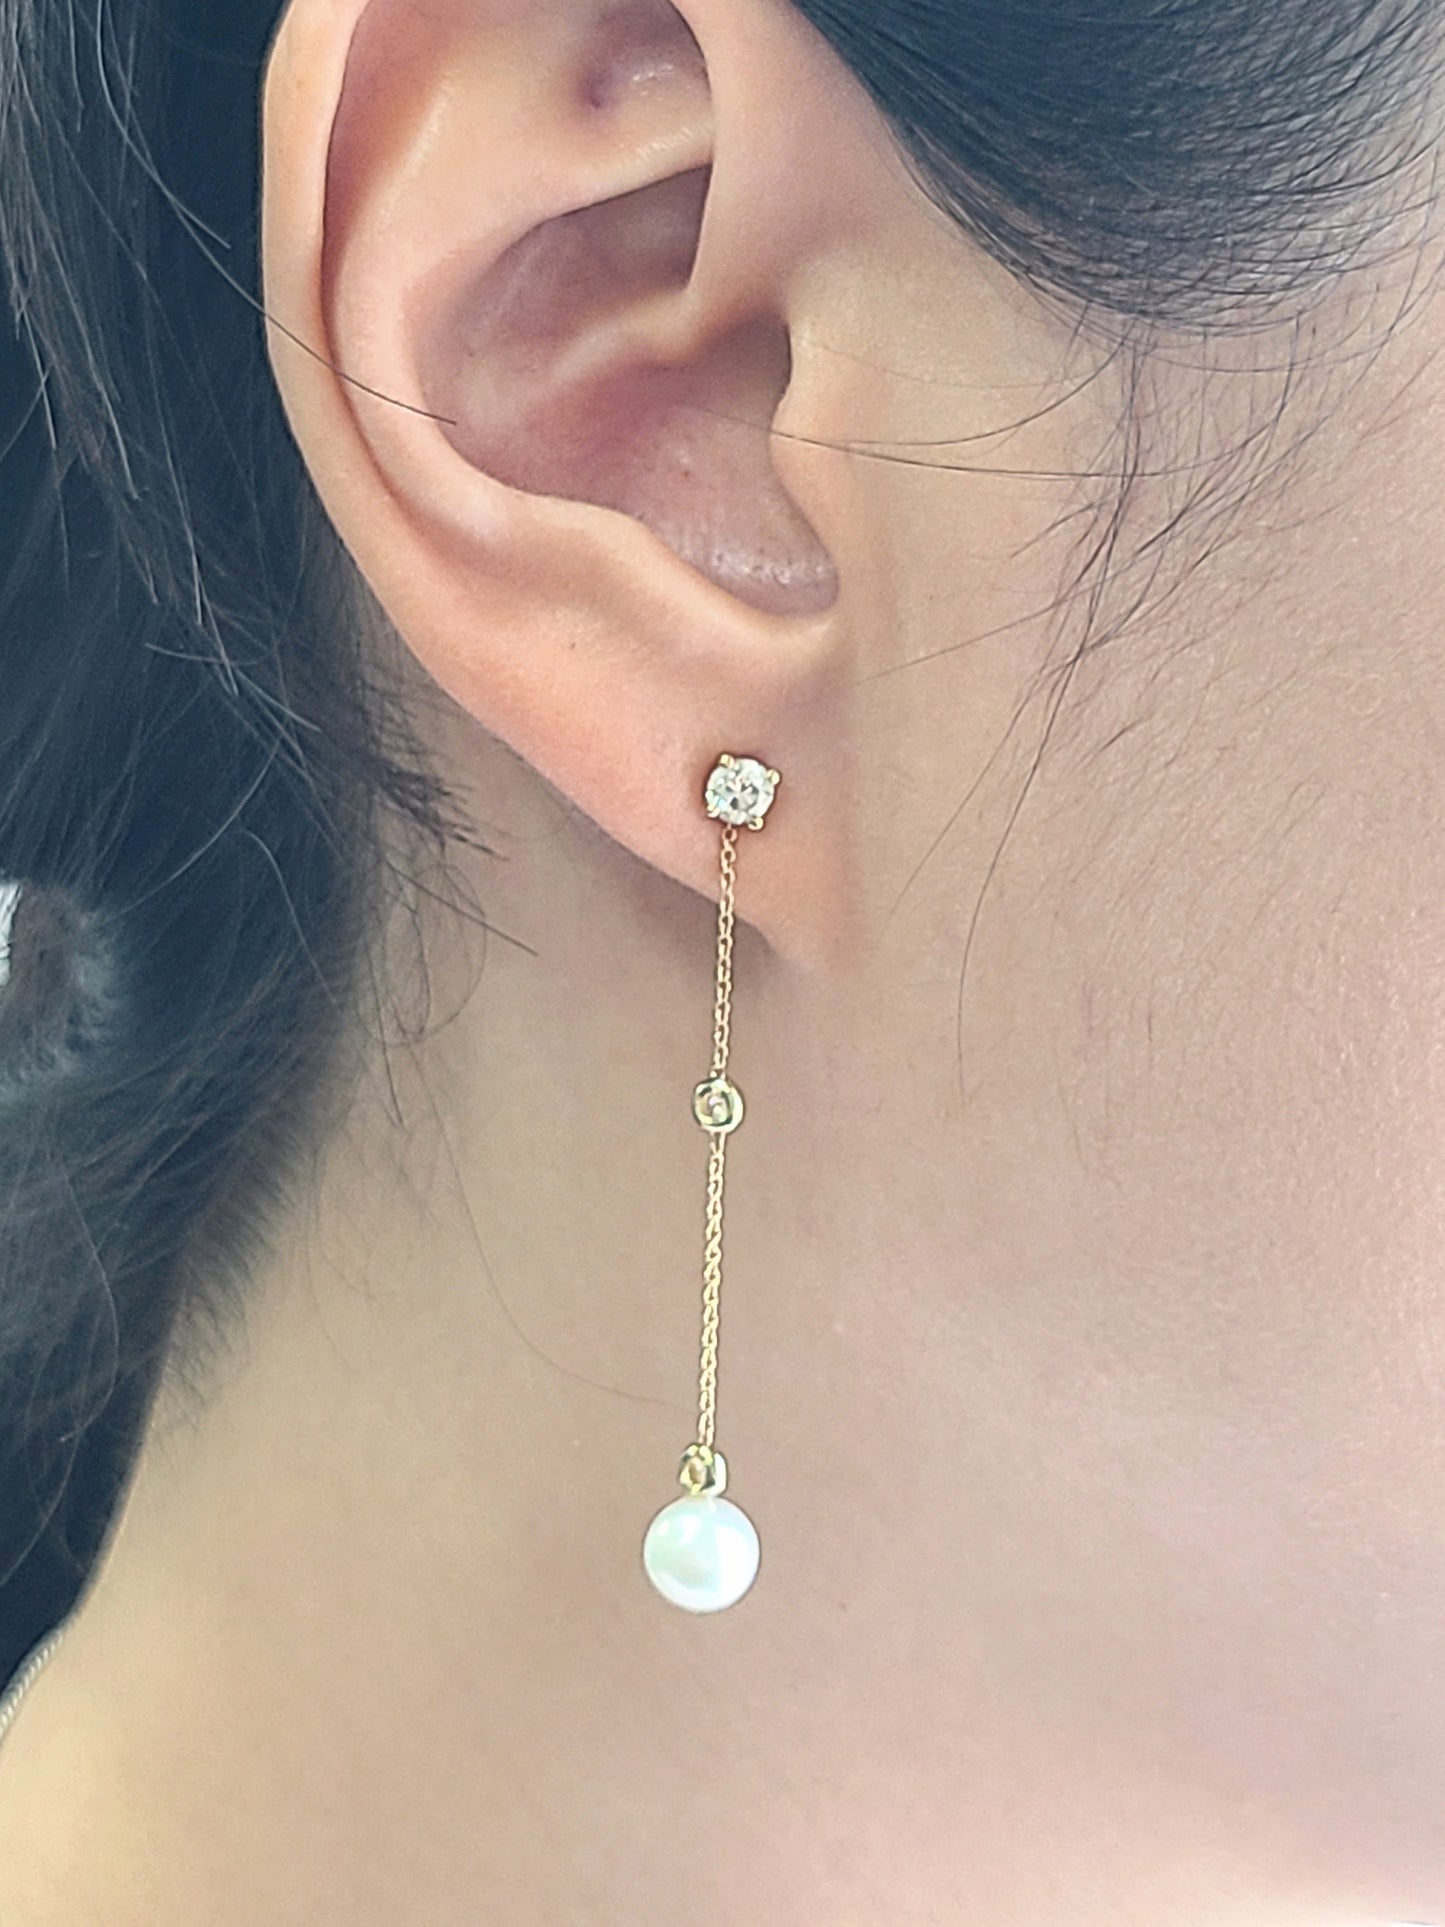 Pearl & Two Diamonds  Drop Chain Jackets (pair)/Diamond Dangle 14K Solid Gold Chain Earring Jackets/Bezel Set Diamond Jacket Earrings